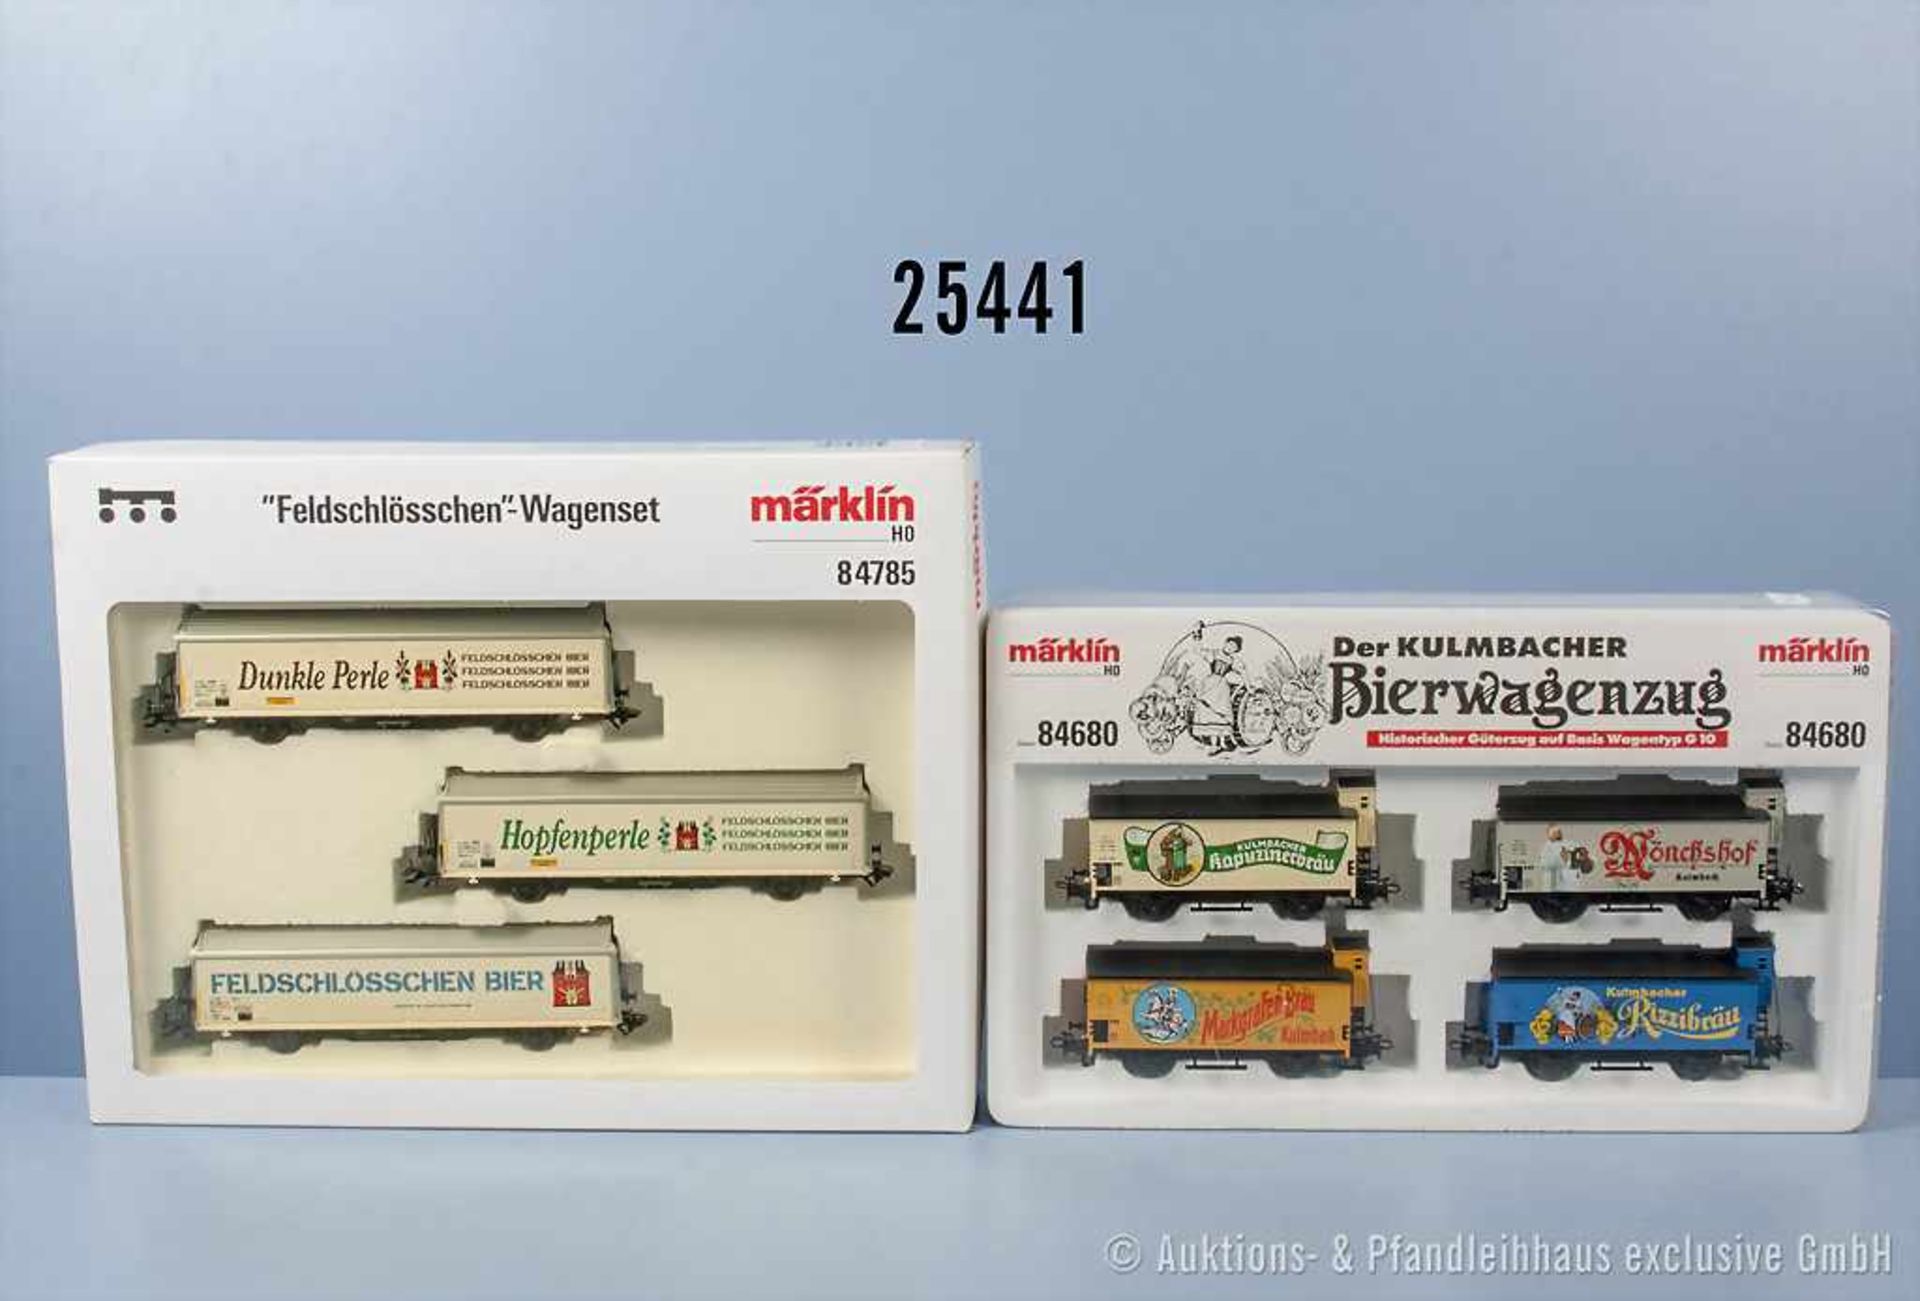 Konv. 2 Märklin H0 Wagensets, dabei 84680 "Der Kulmbacher Bierwagenzug" und 84785 "Feldschlösschen",